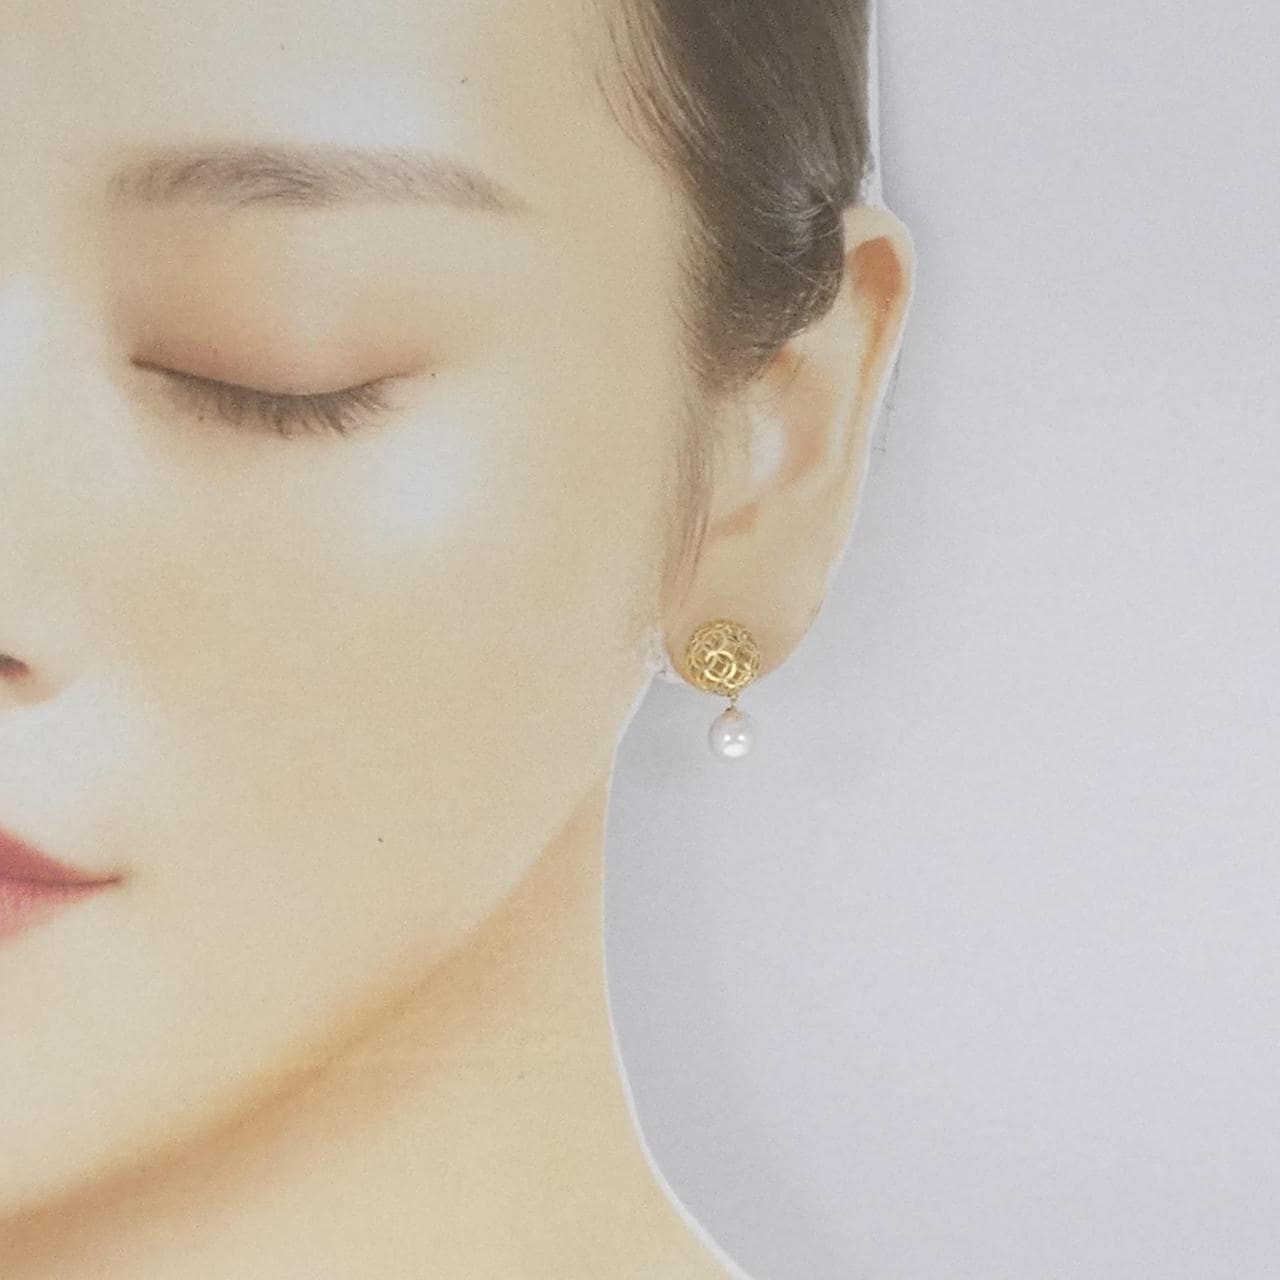 K18YG Akoya pearl earrings 7.1mm